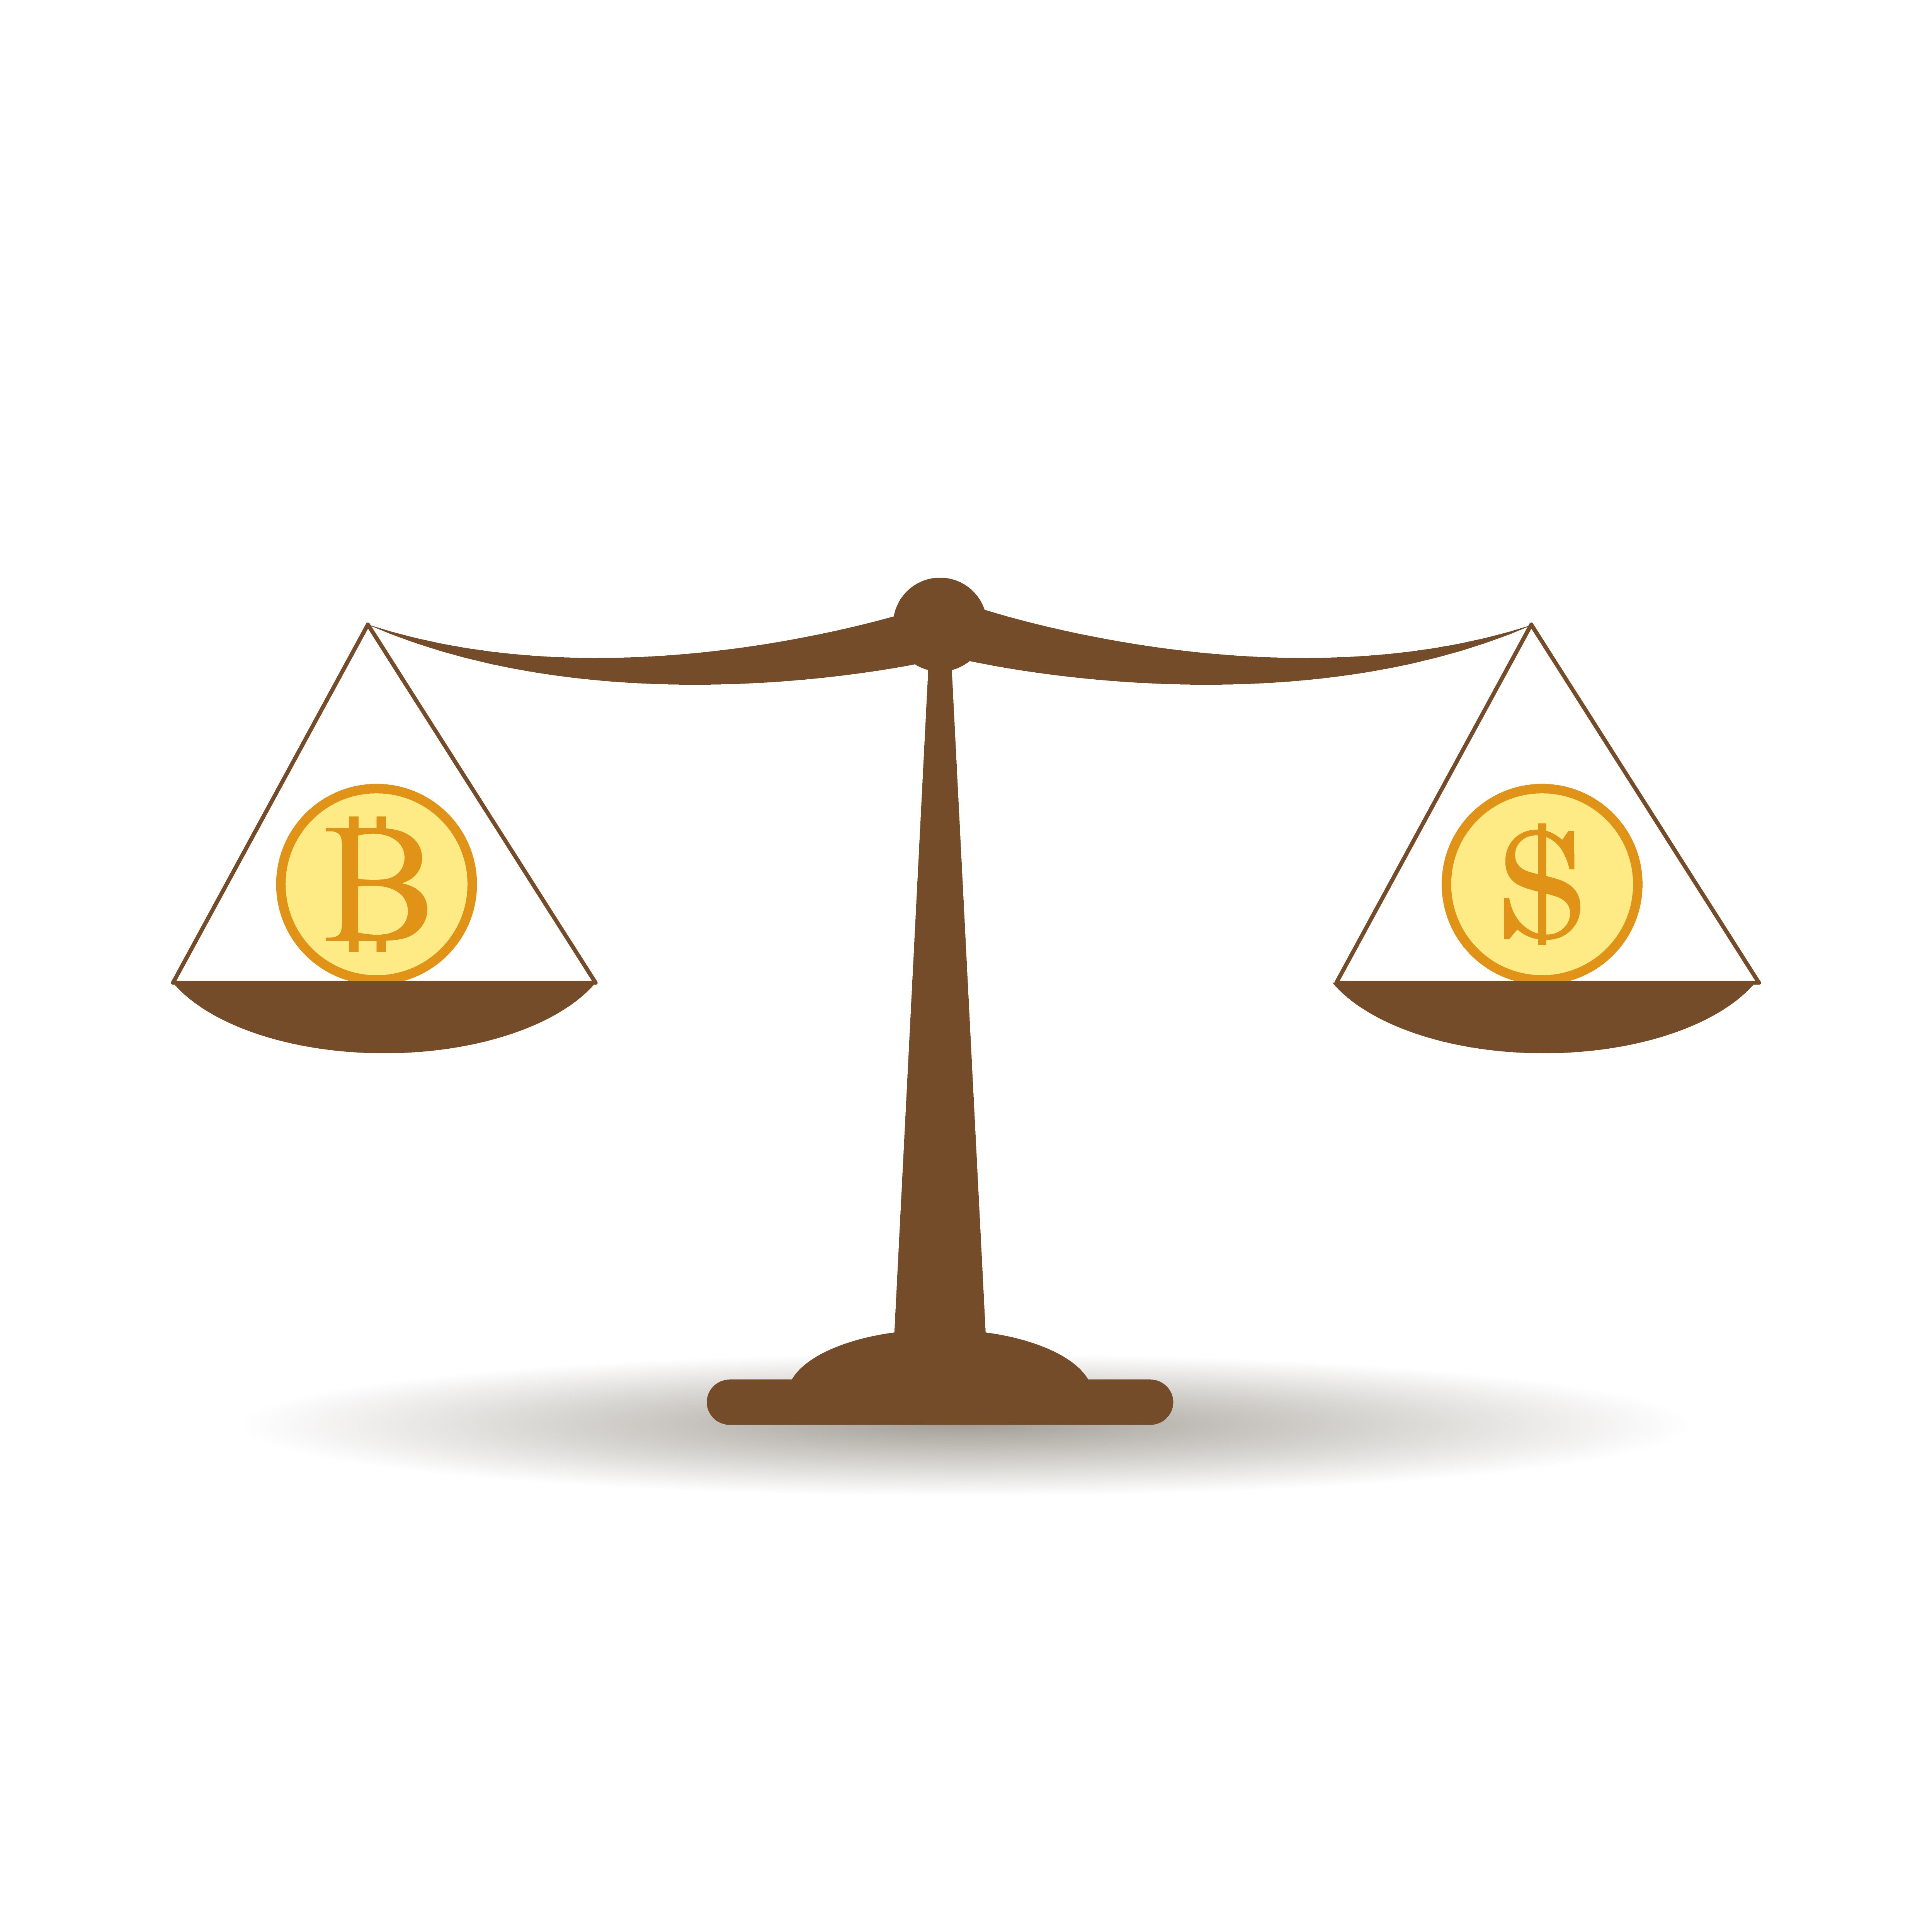 prekyba bitcoin vs forex